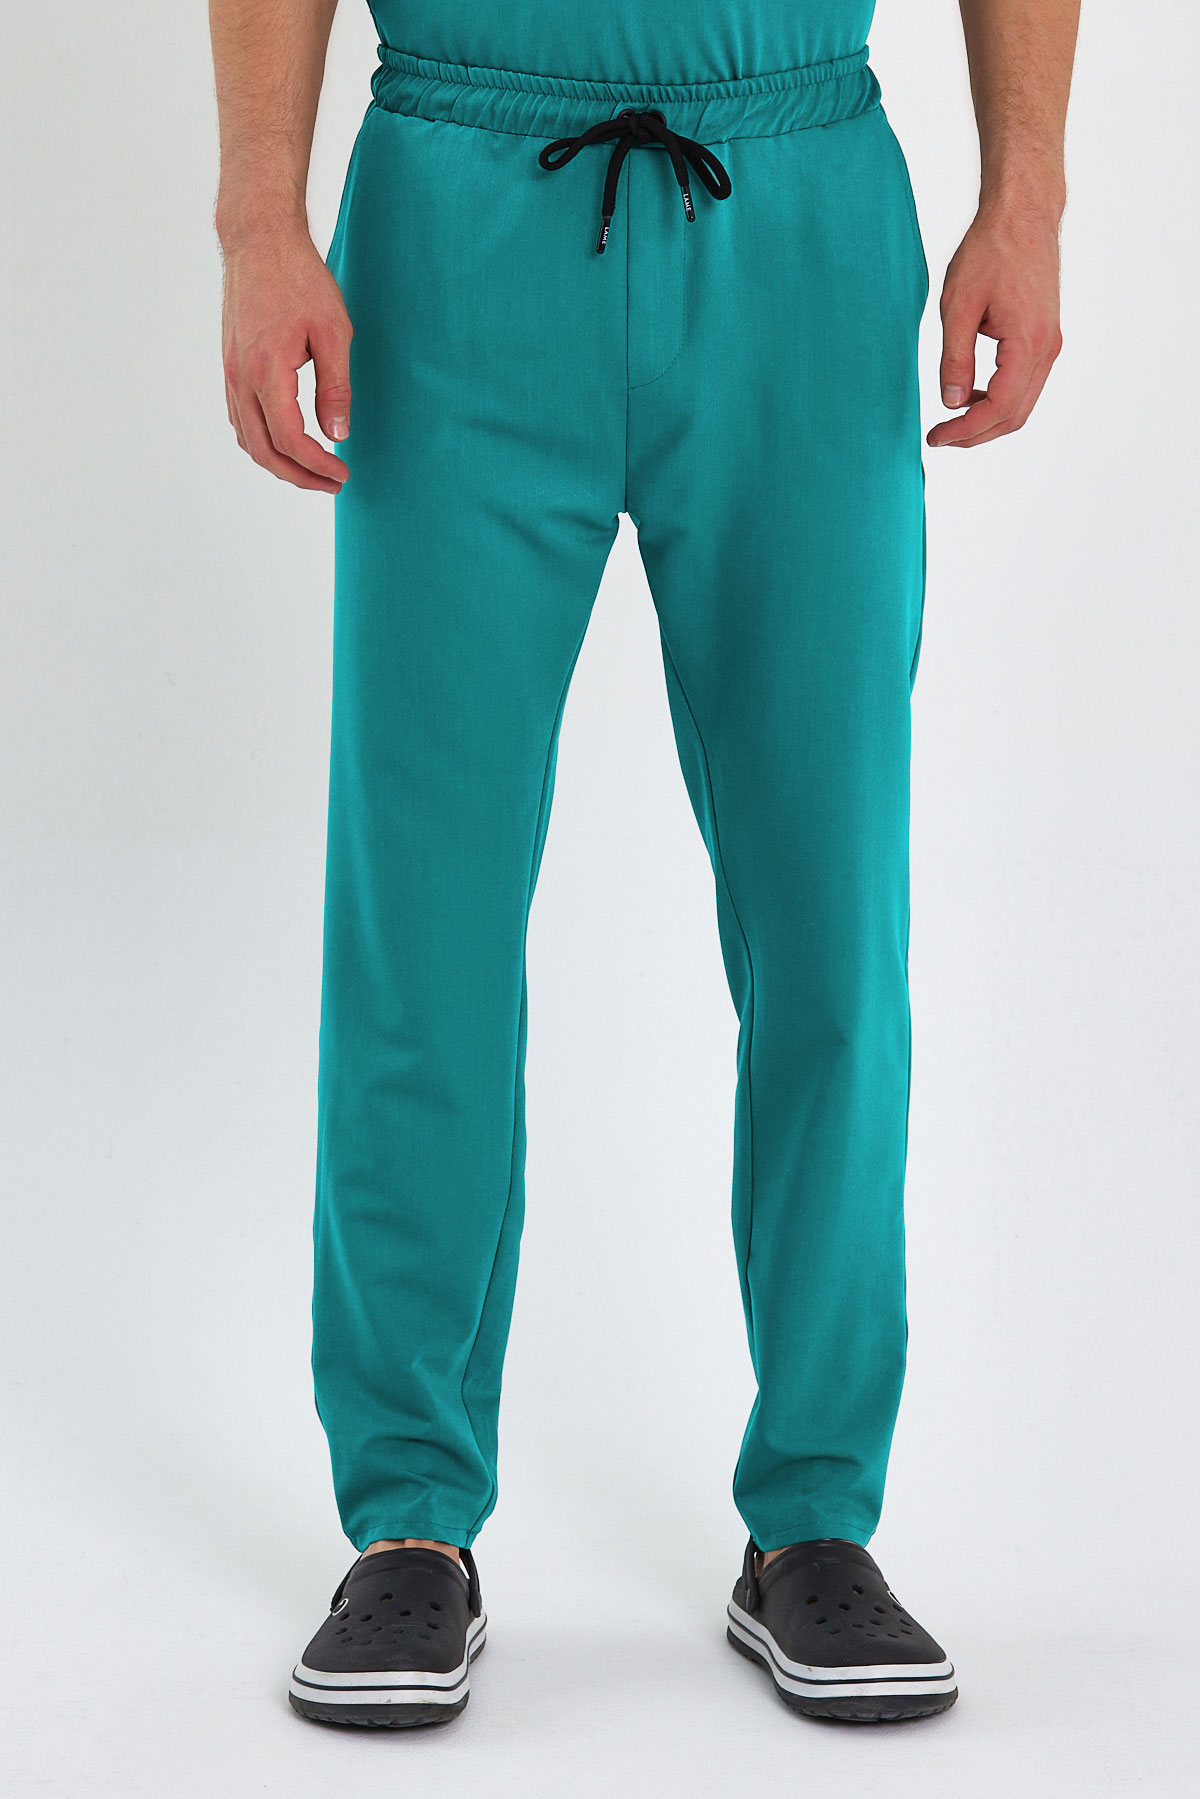 LAME 2005 Premium Likralı Cerrahi Yeşil Scrubs, Hemşire Forması Klasik Paça Pantolon